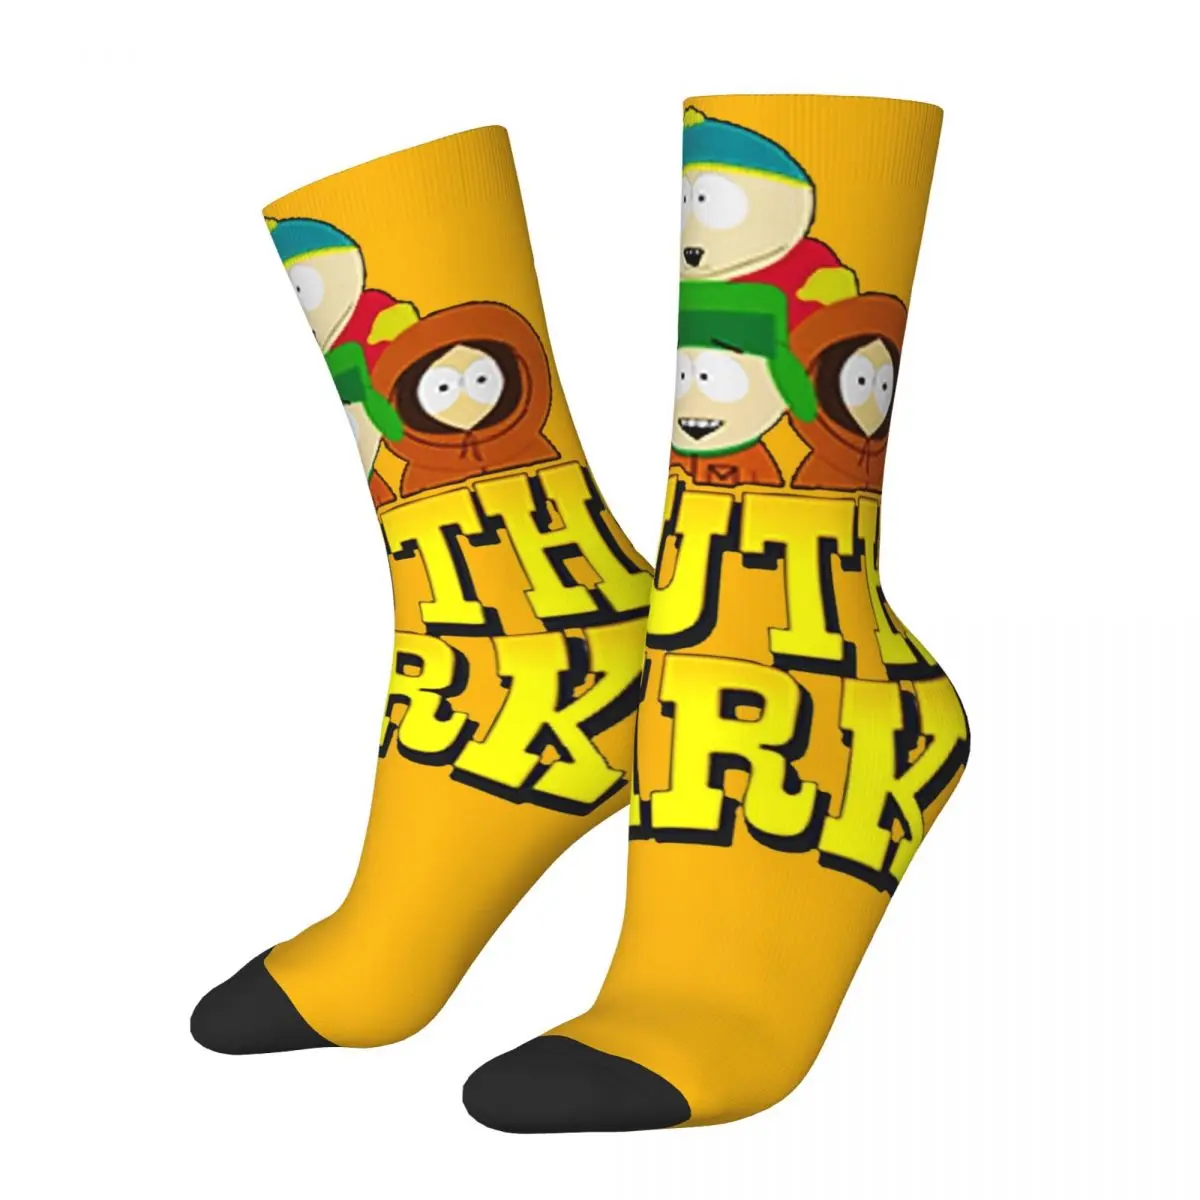 

Vintage Southpark Merch Socks Cozy Humor Sport Crew Socks Cotton for Women Men Best Gift Idea